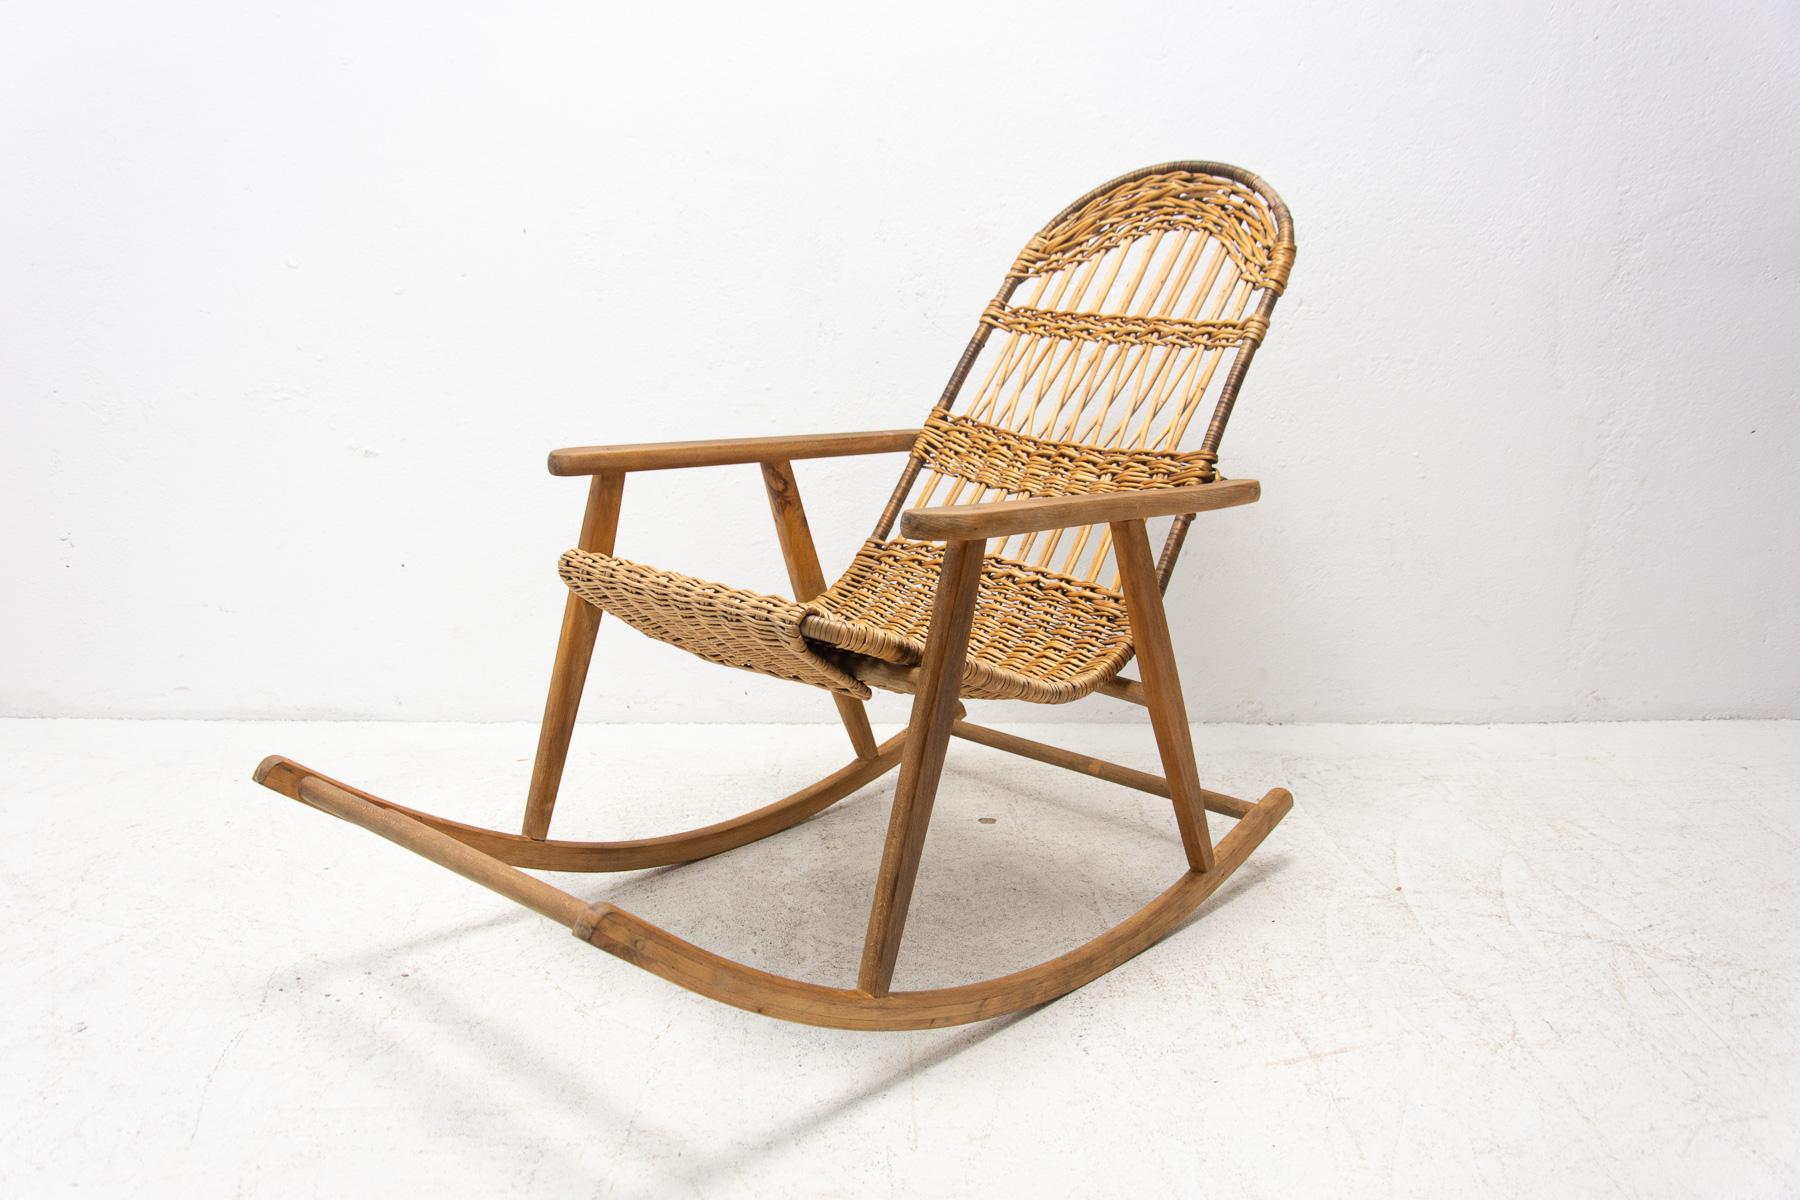 Cette chaise à bascule en osier a été fabriquée dans l'ancienne Tchécoslovaquie dans les années 1960. Il est fait en bois de hêtre. Il est en très bon état vintage

Mesures : hauteur : 88 cm

largeur : 62 cm

profondeur : 110 cm

hauteur du